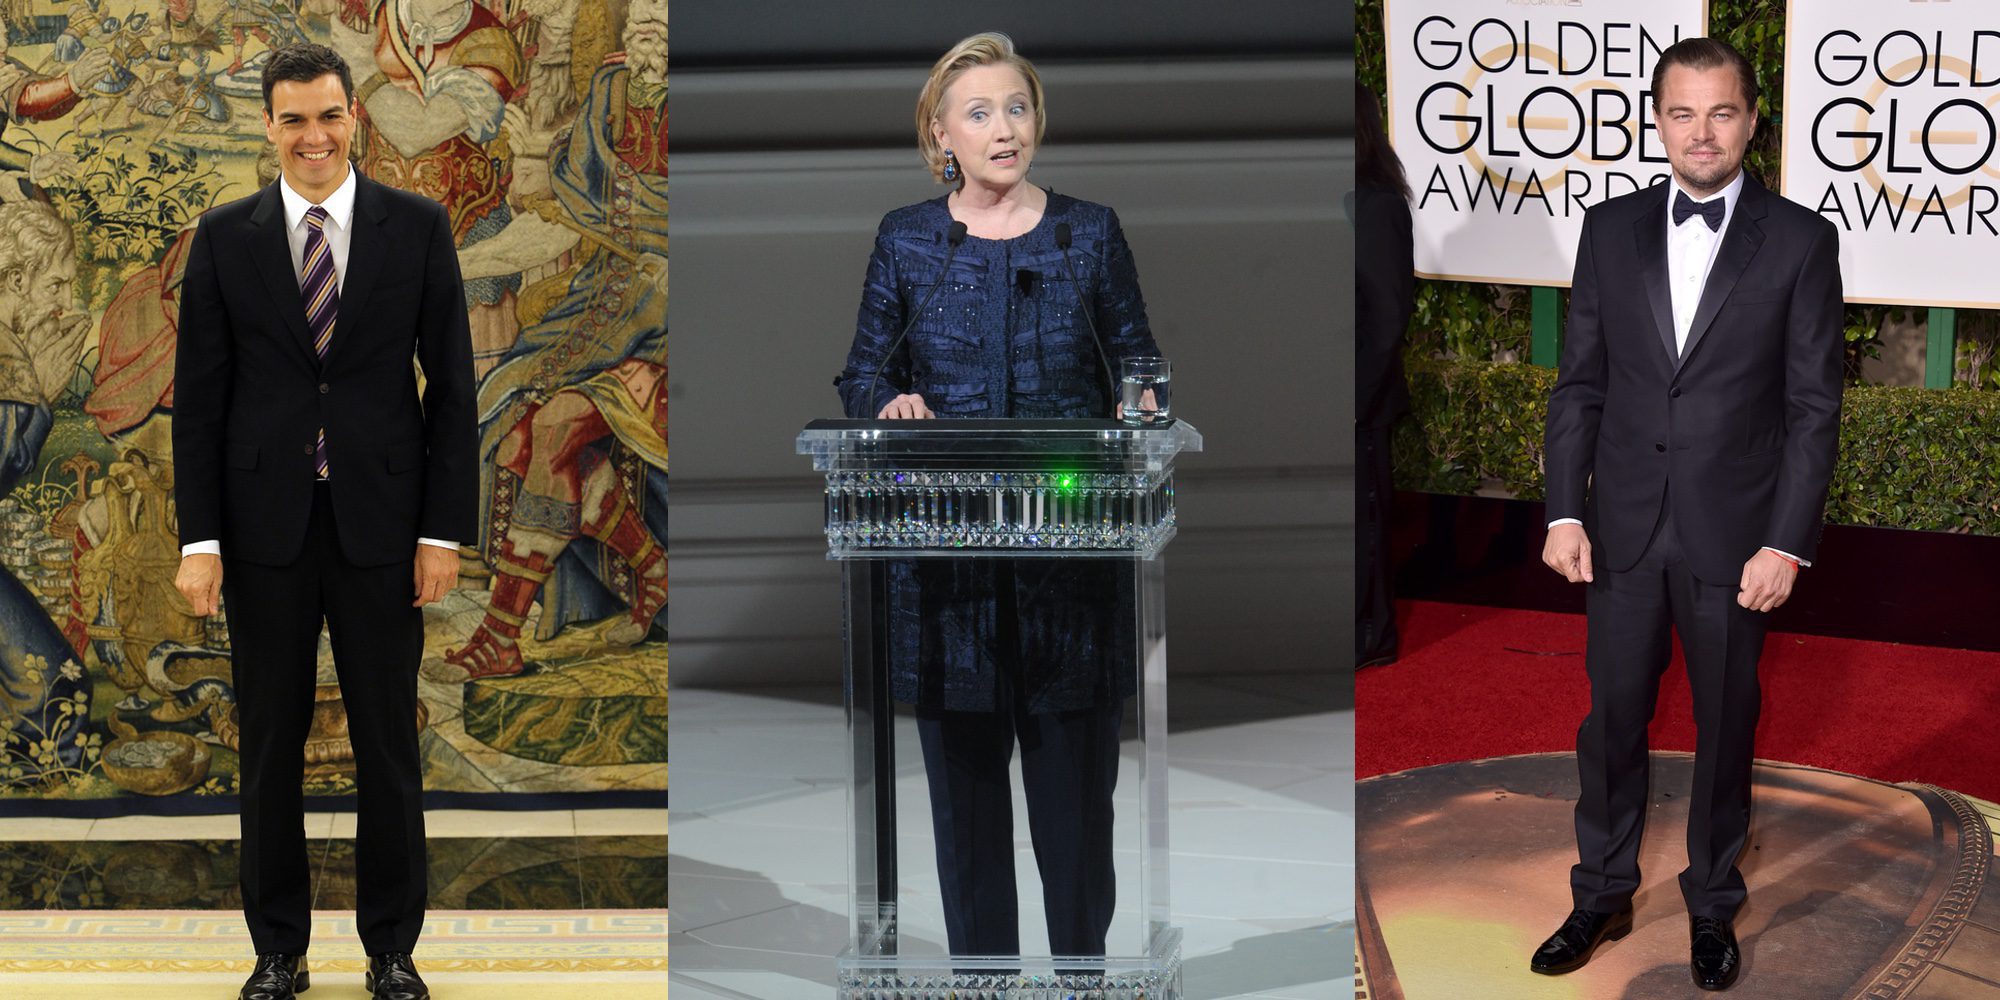 Pedro Sánchez, Leonardo DiCaprio, Hillary Clinton... los personajes que más titulares dieron en 2016